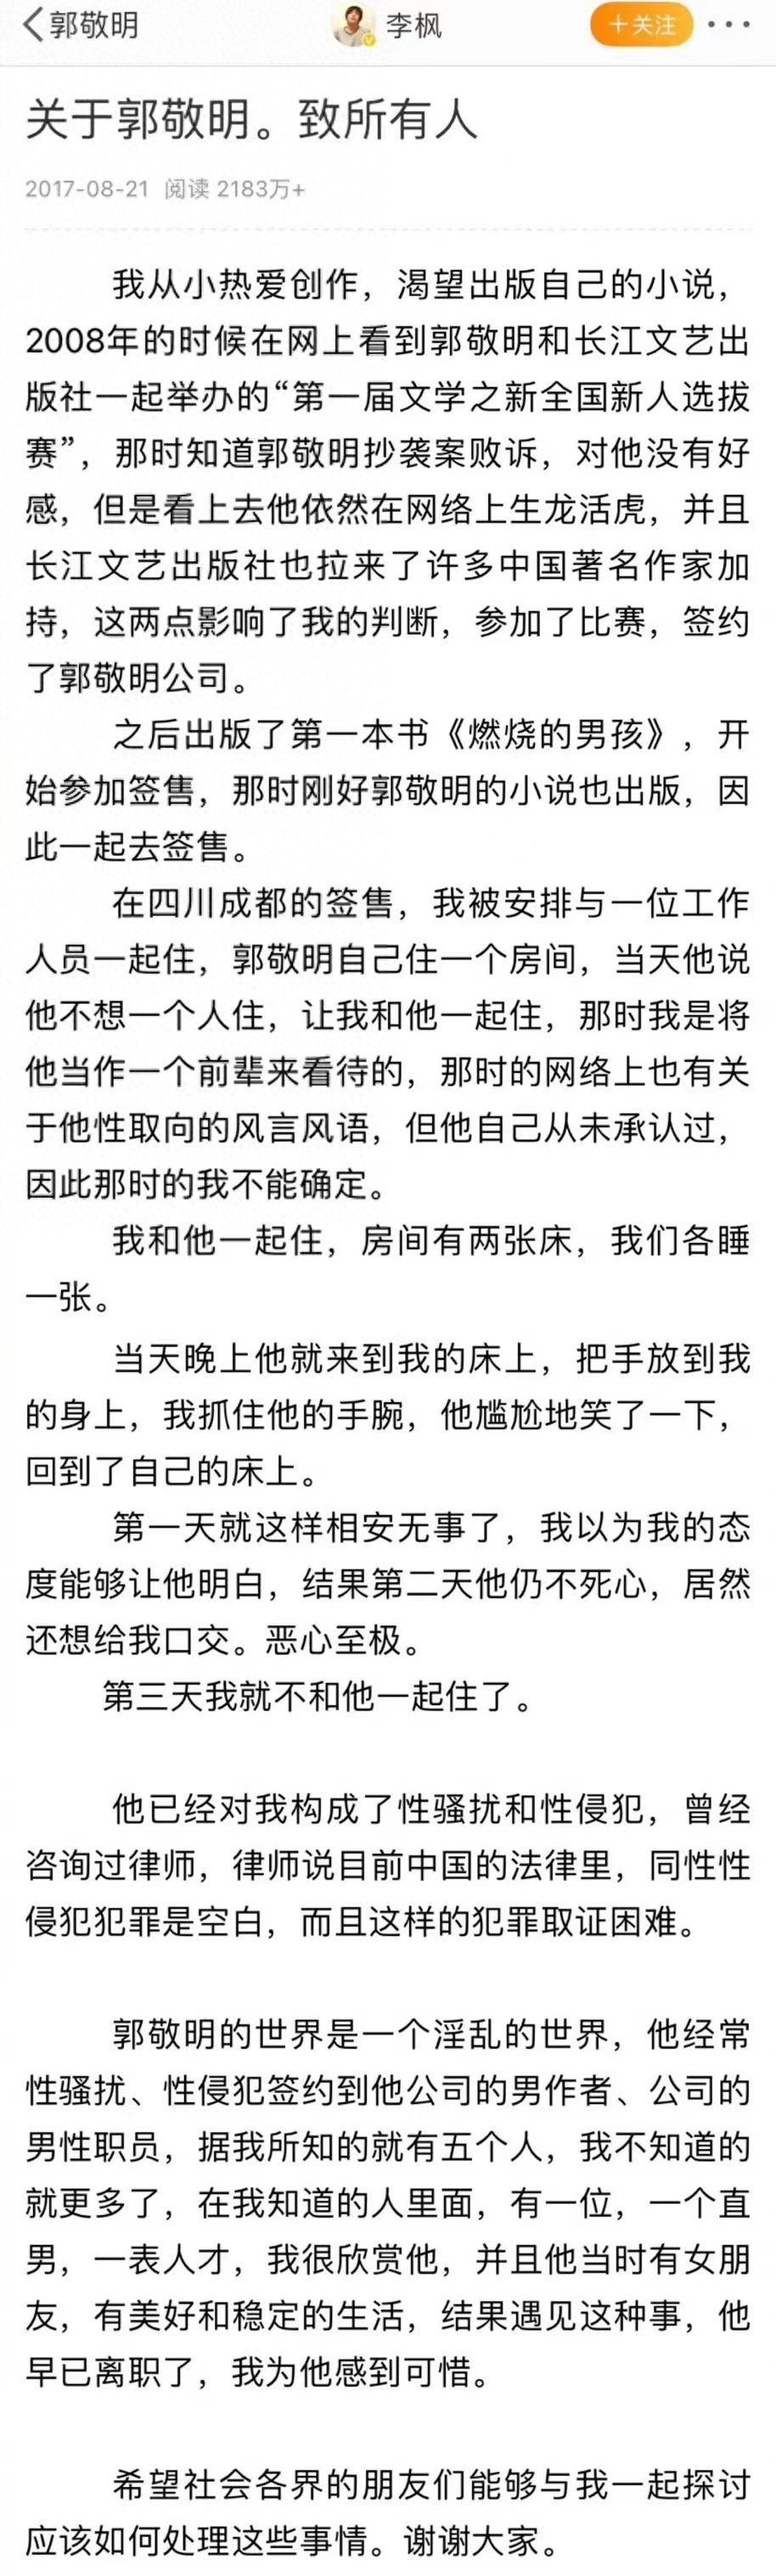 六年前郭敬明起诉李枫诽谤罪被驳回，李枫再发文谈被其性骚扰